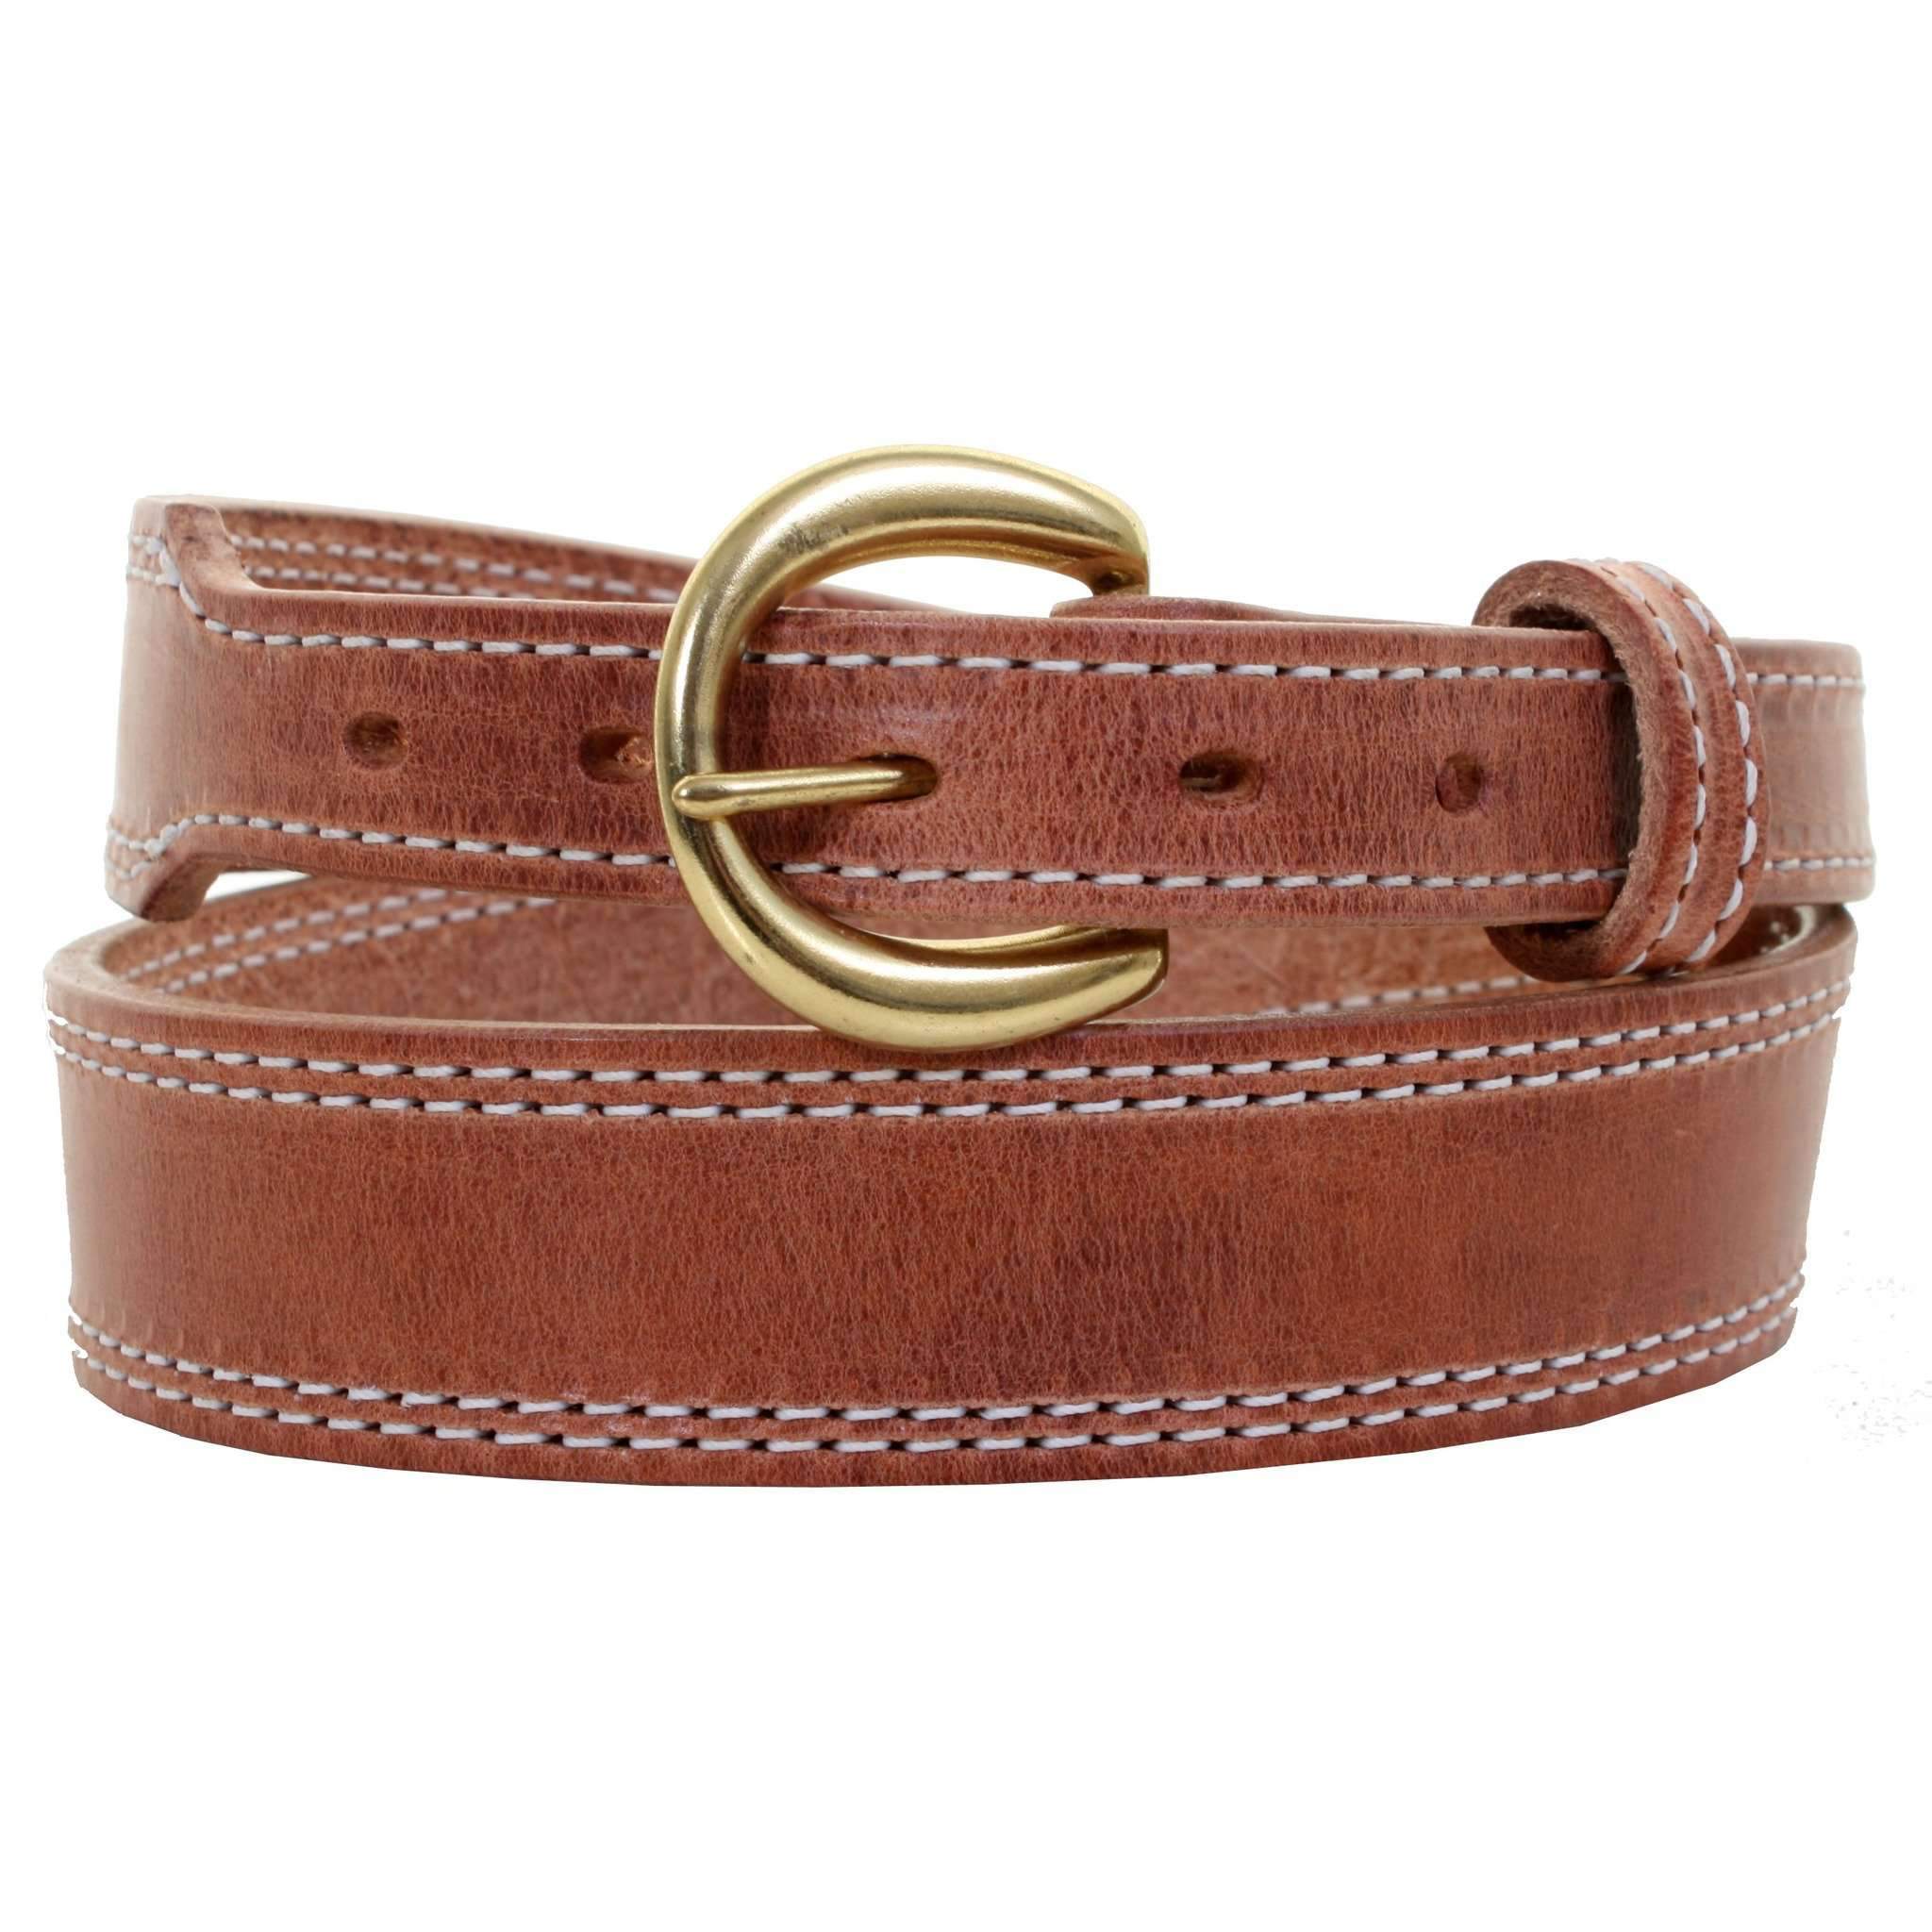 Hollister Womens genuine leather brown belt Size M Pink Orange Neon  Stitching